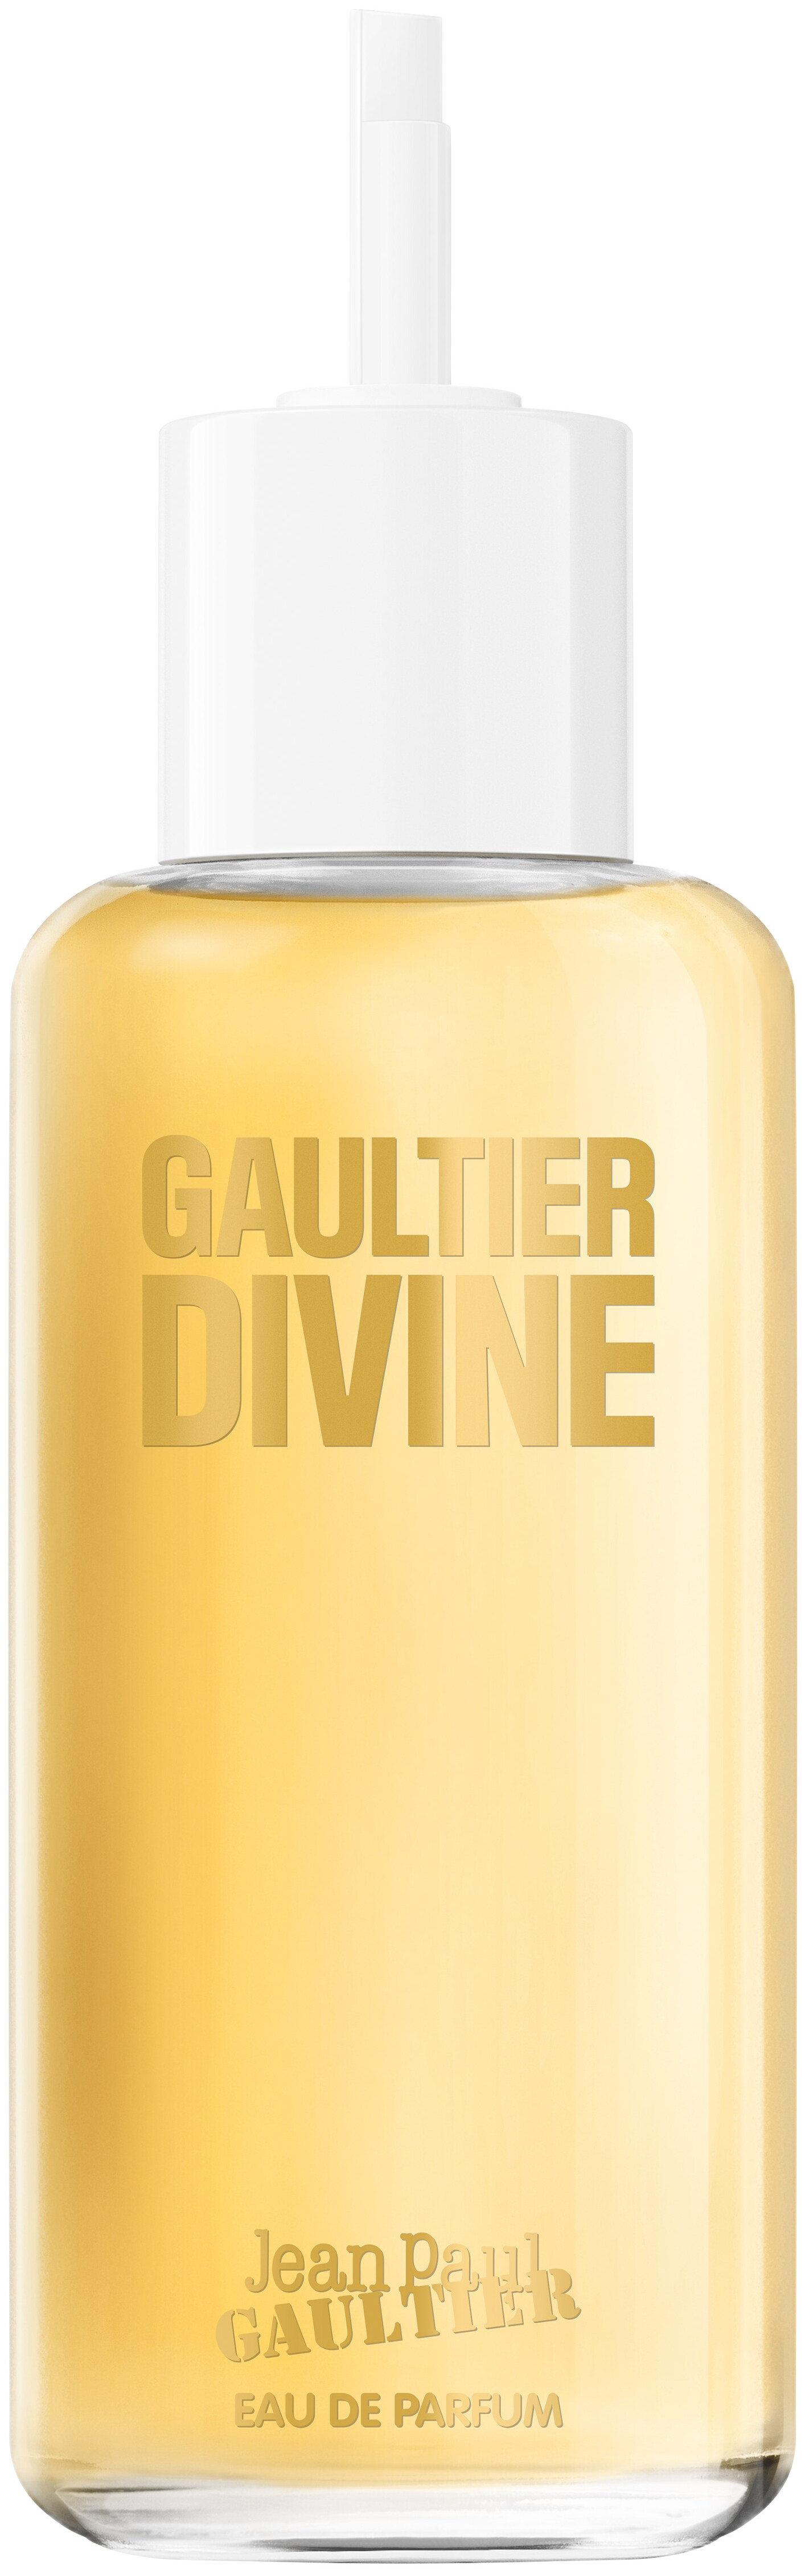 Jean Paul Gaultier Gaultier Divine Eau de Parfum Spray Refill 200ml